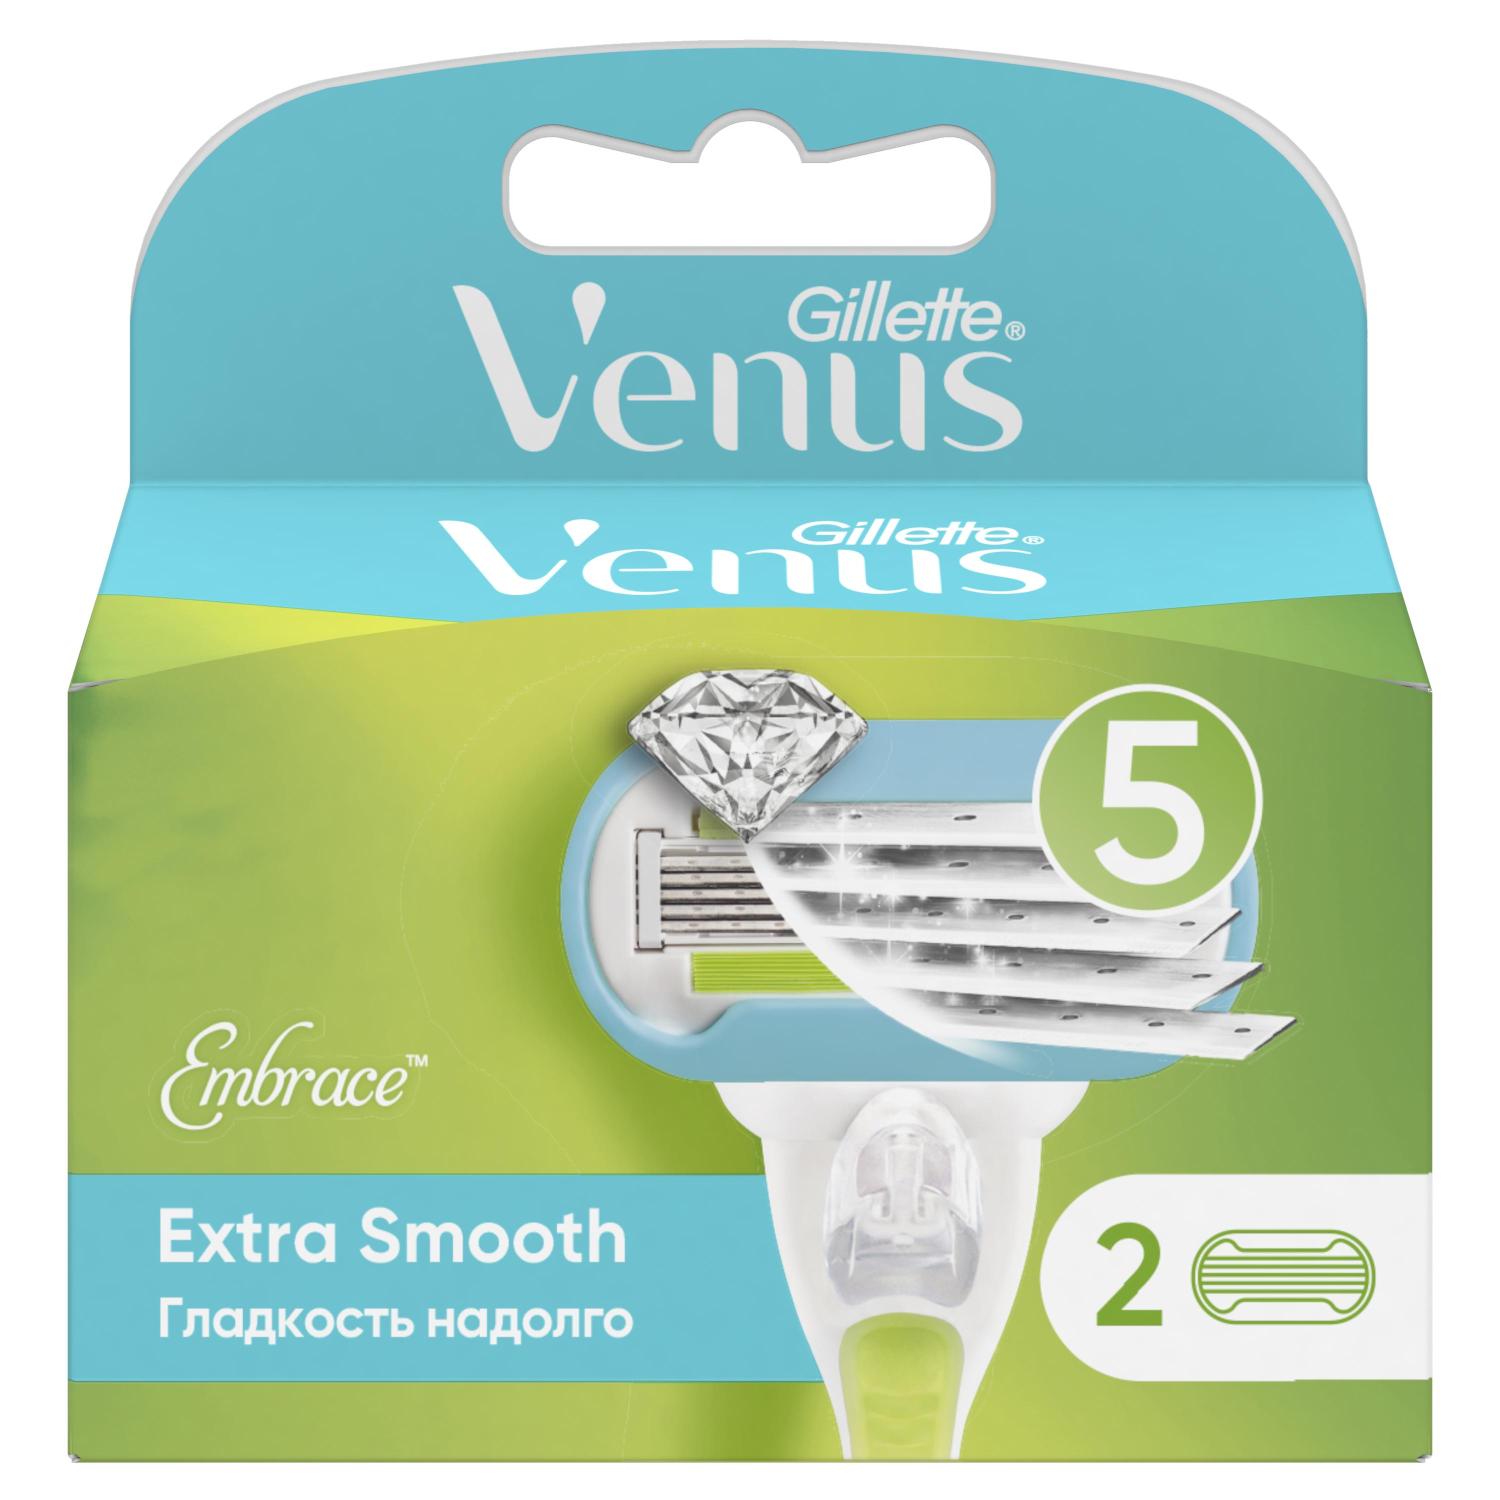 Жиллетт кассеты Венус Эмбрейс №2 жиллетт кассеты венус для женщин 2